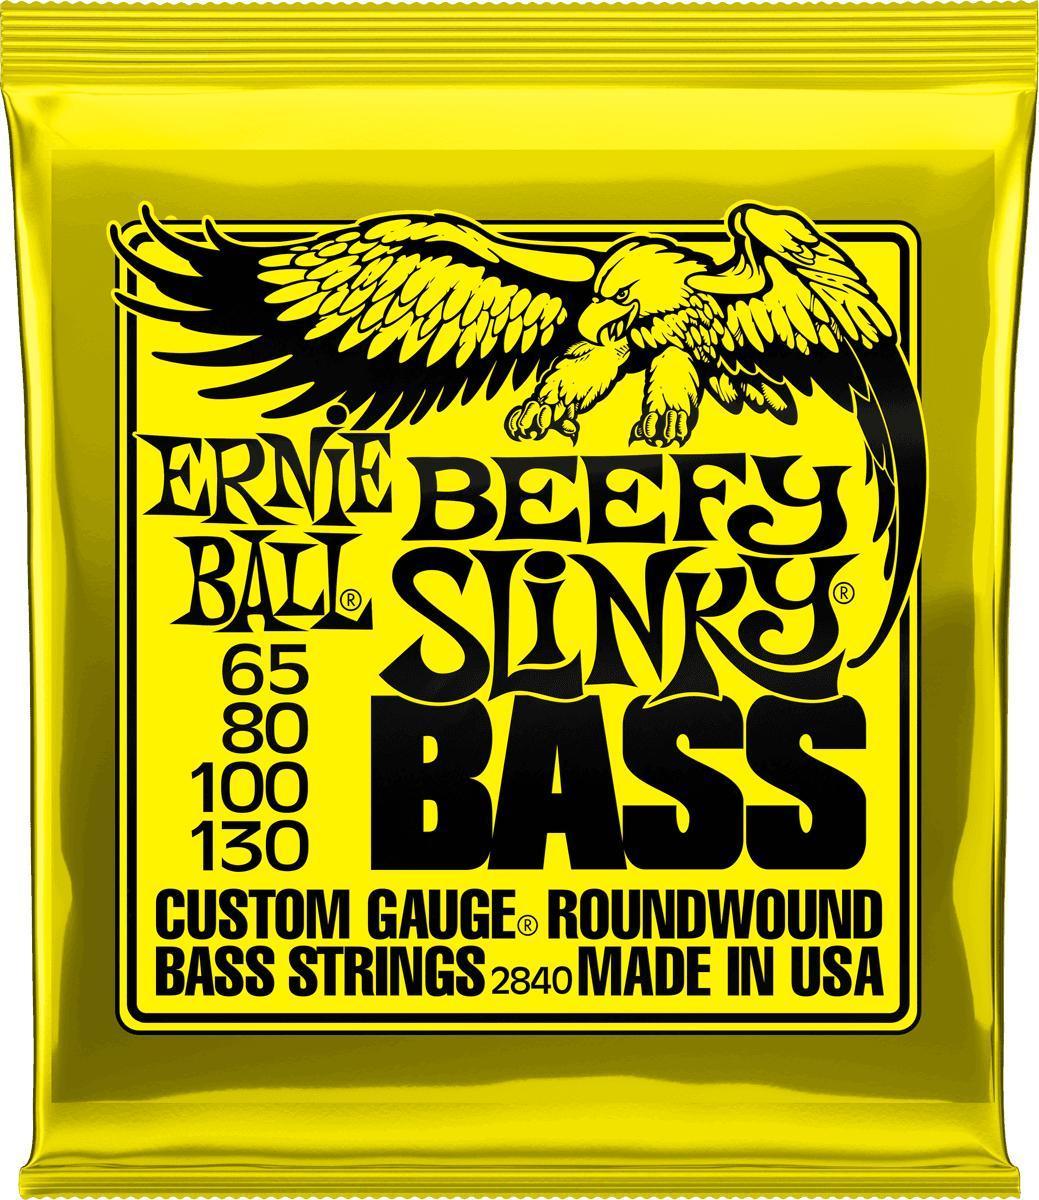 Cuerdas para bajo eléctrico Ernie ball Bass 2840 Beefy Slinky 65-130